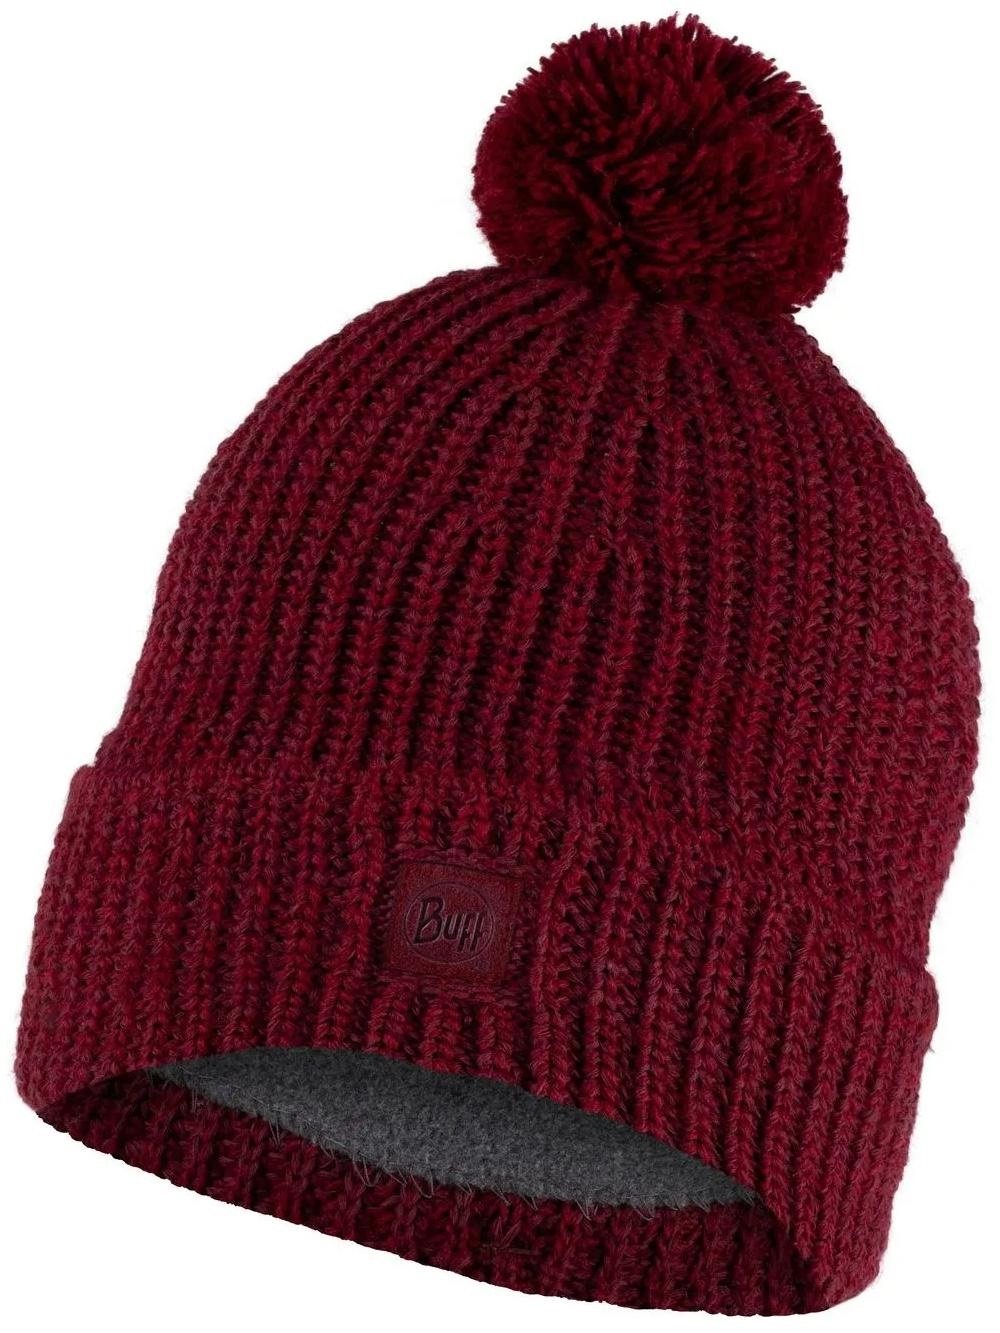 Шапка Buff Knitted & Fleece Band Hat Vaed Mahogany, US:one size, 129619.416.10.00 шапка buff knitted hat nilah nilah ice us one size 132322 798 10 00